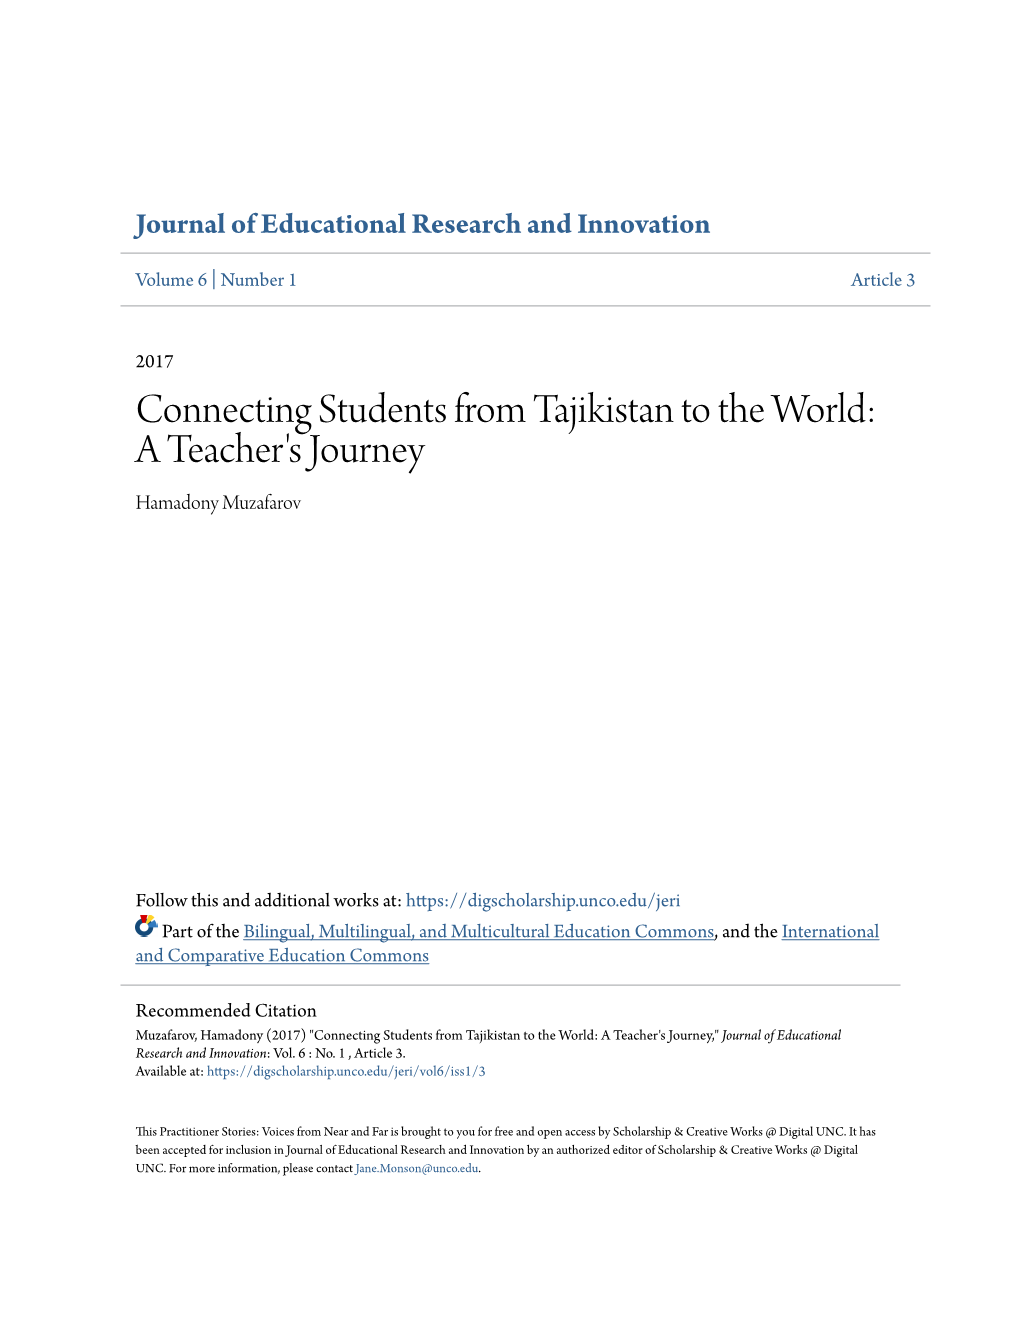 Connecting Students from Tajikistan to the World: a Teacher's Journey Hamadony Muzafarov